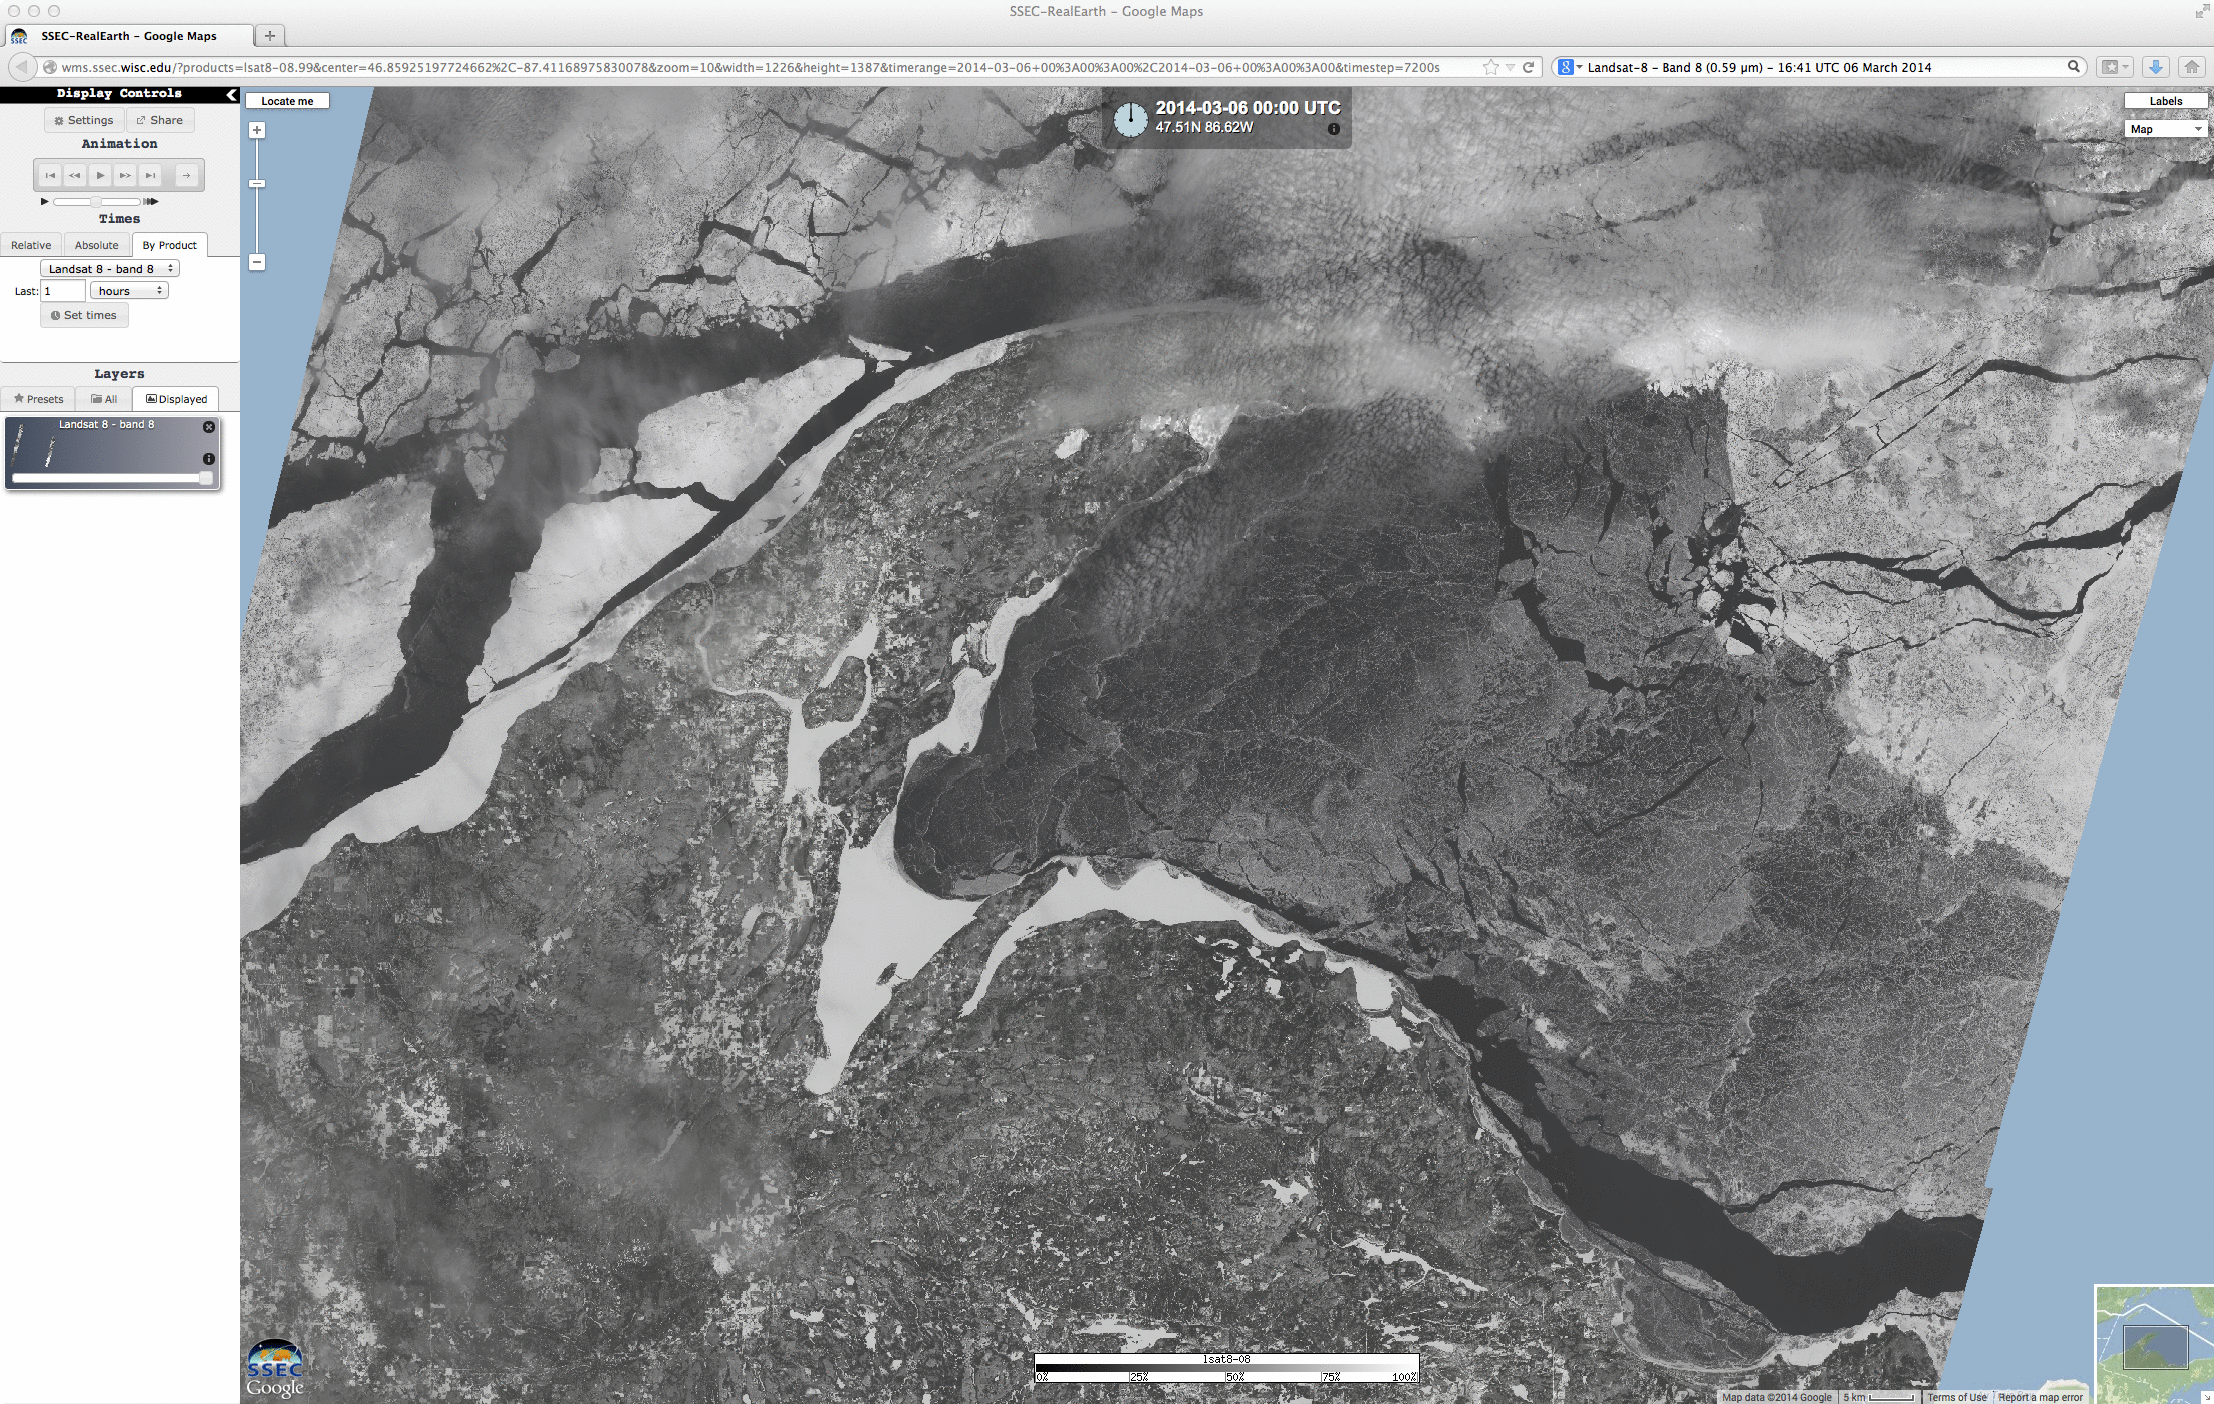 Landsat-8 0.59 Âµm panochormatic visible channel image